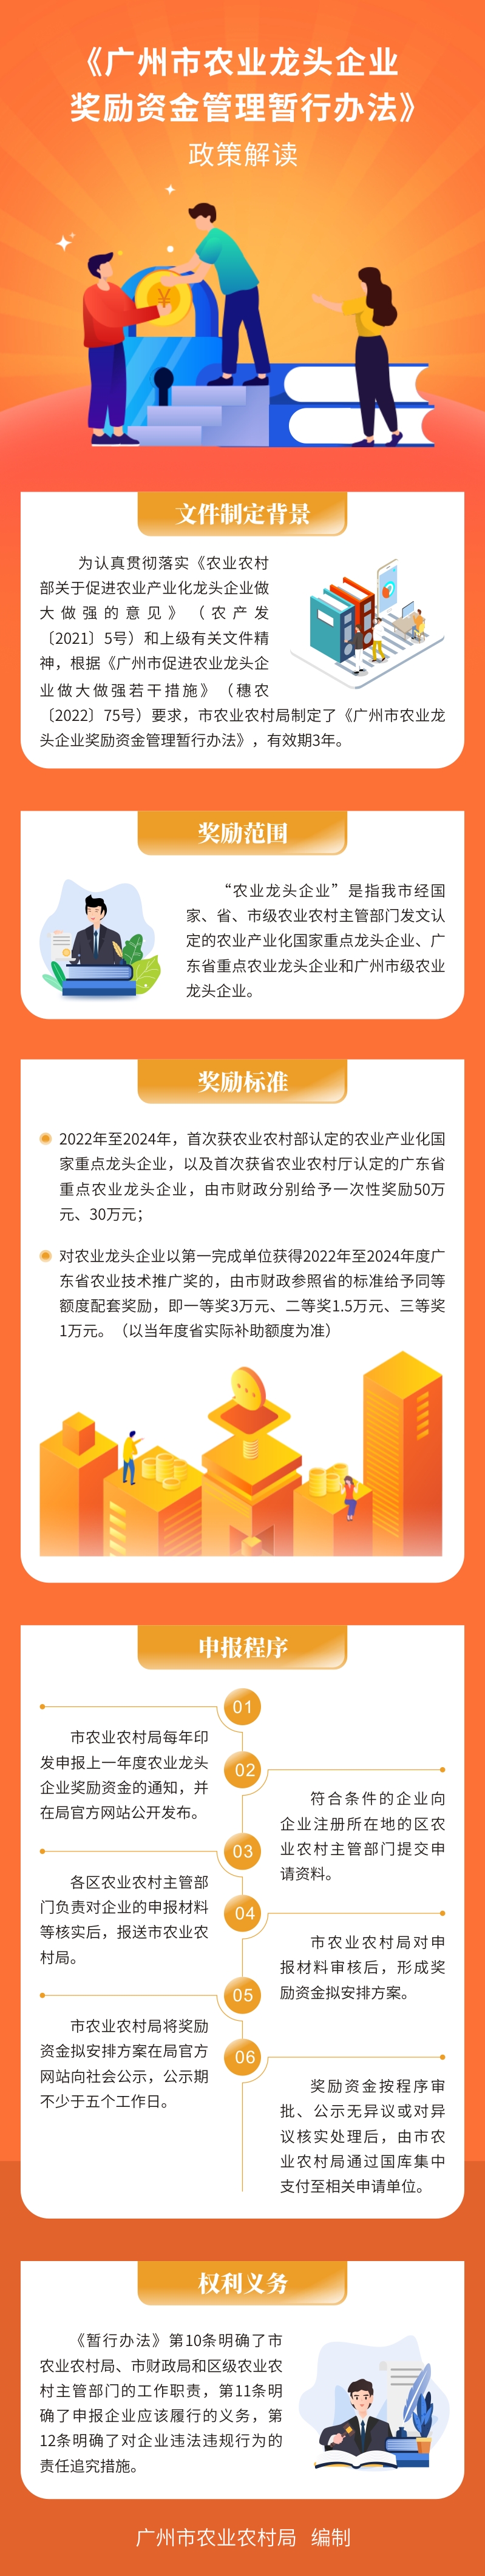 《广州市农业龙头企业奖励资金管理暂行办法》政策解读626.jpg